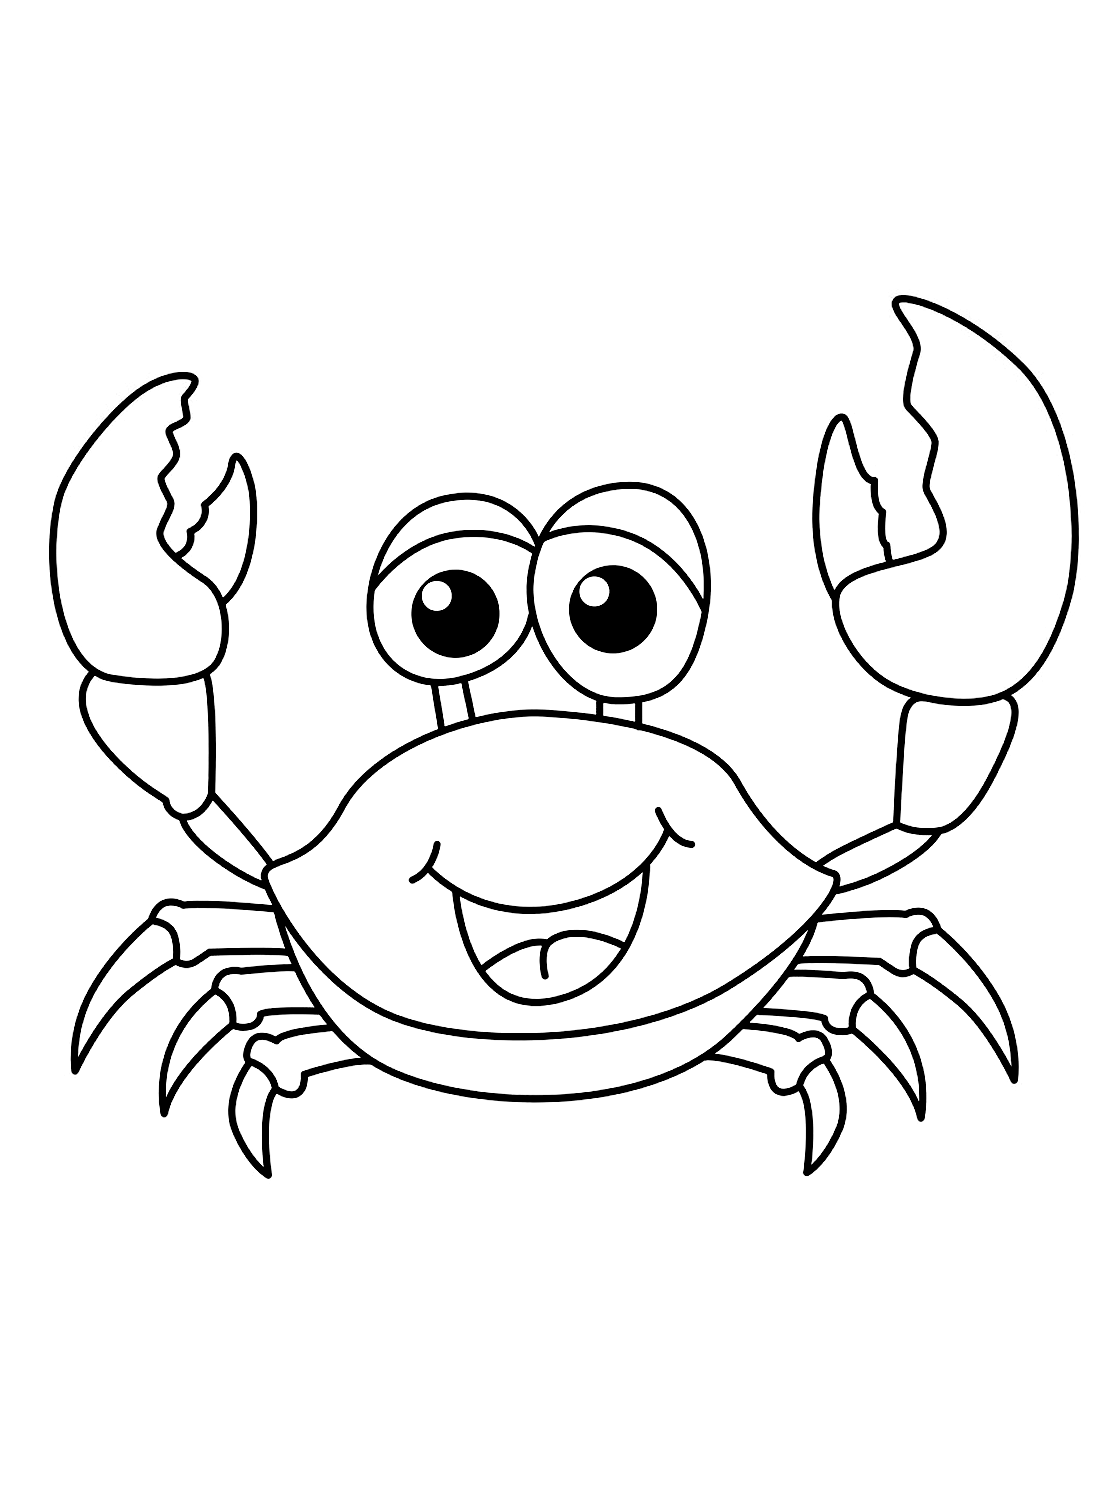 简单的螃蟹可从 Crab 打印